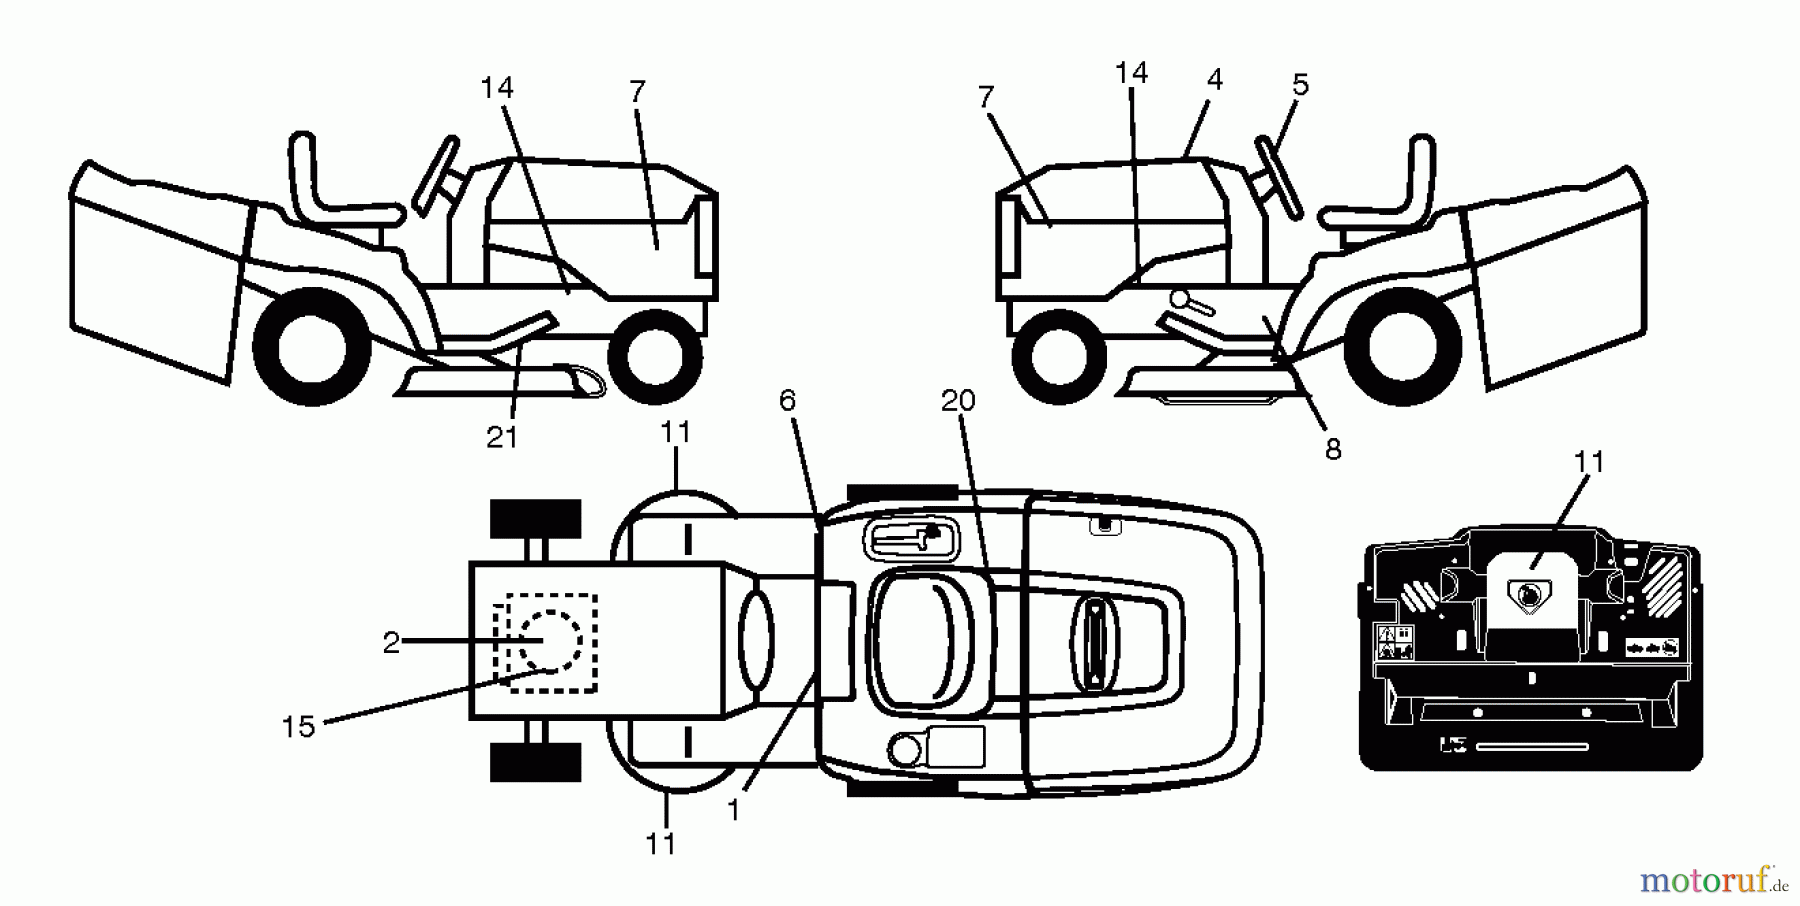  Jonsered Rasen  und Garten Traktoren LT2317 CMA (96051002101) - Jonsered Lawn & Garden Tractor (2011-07) DECALS